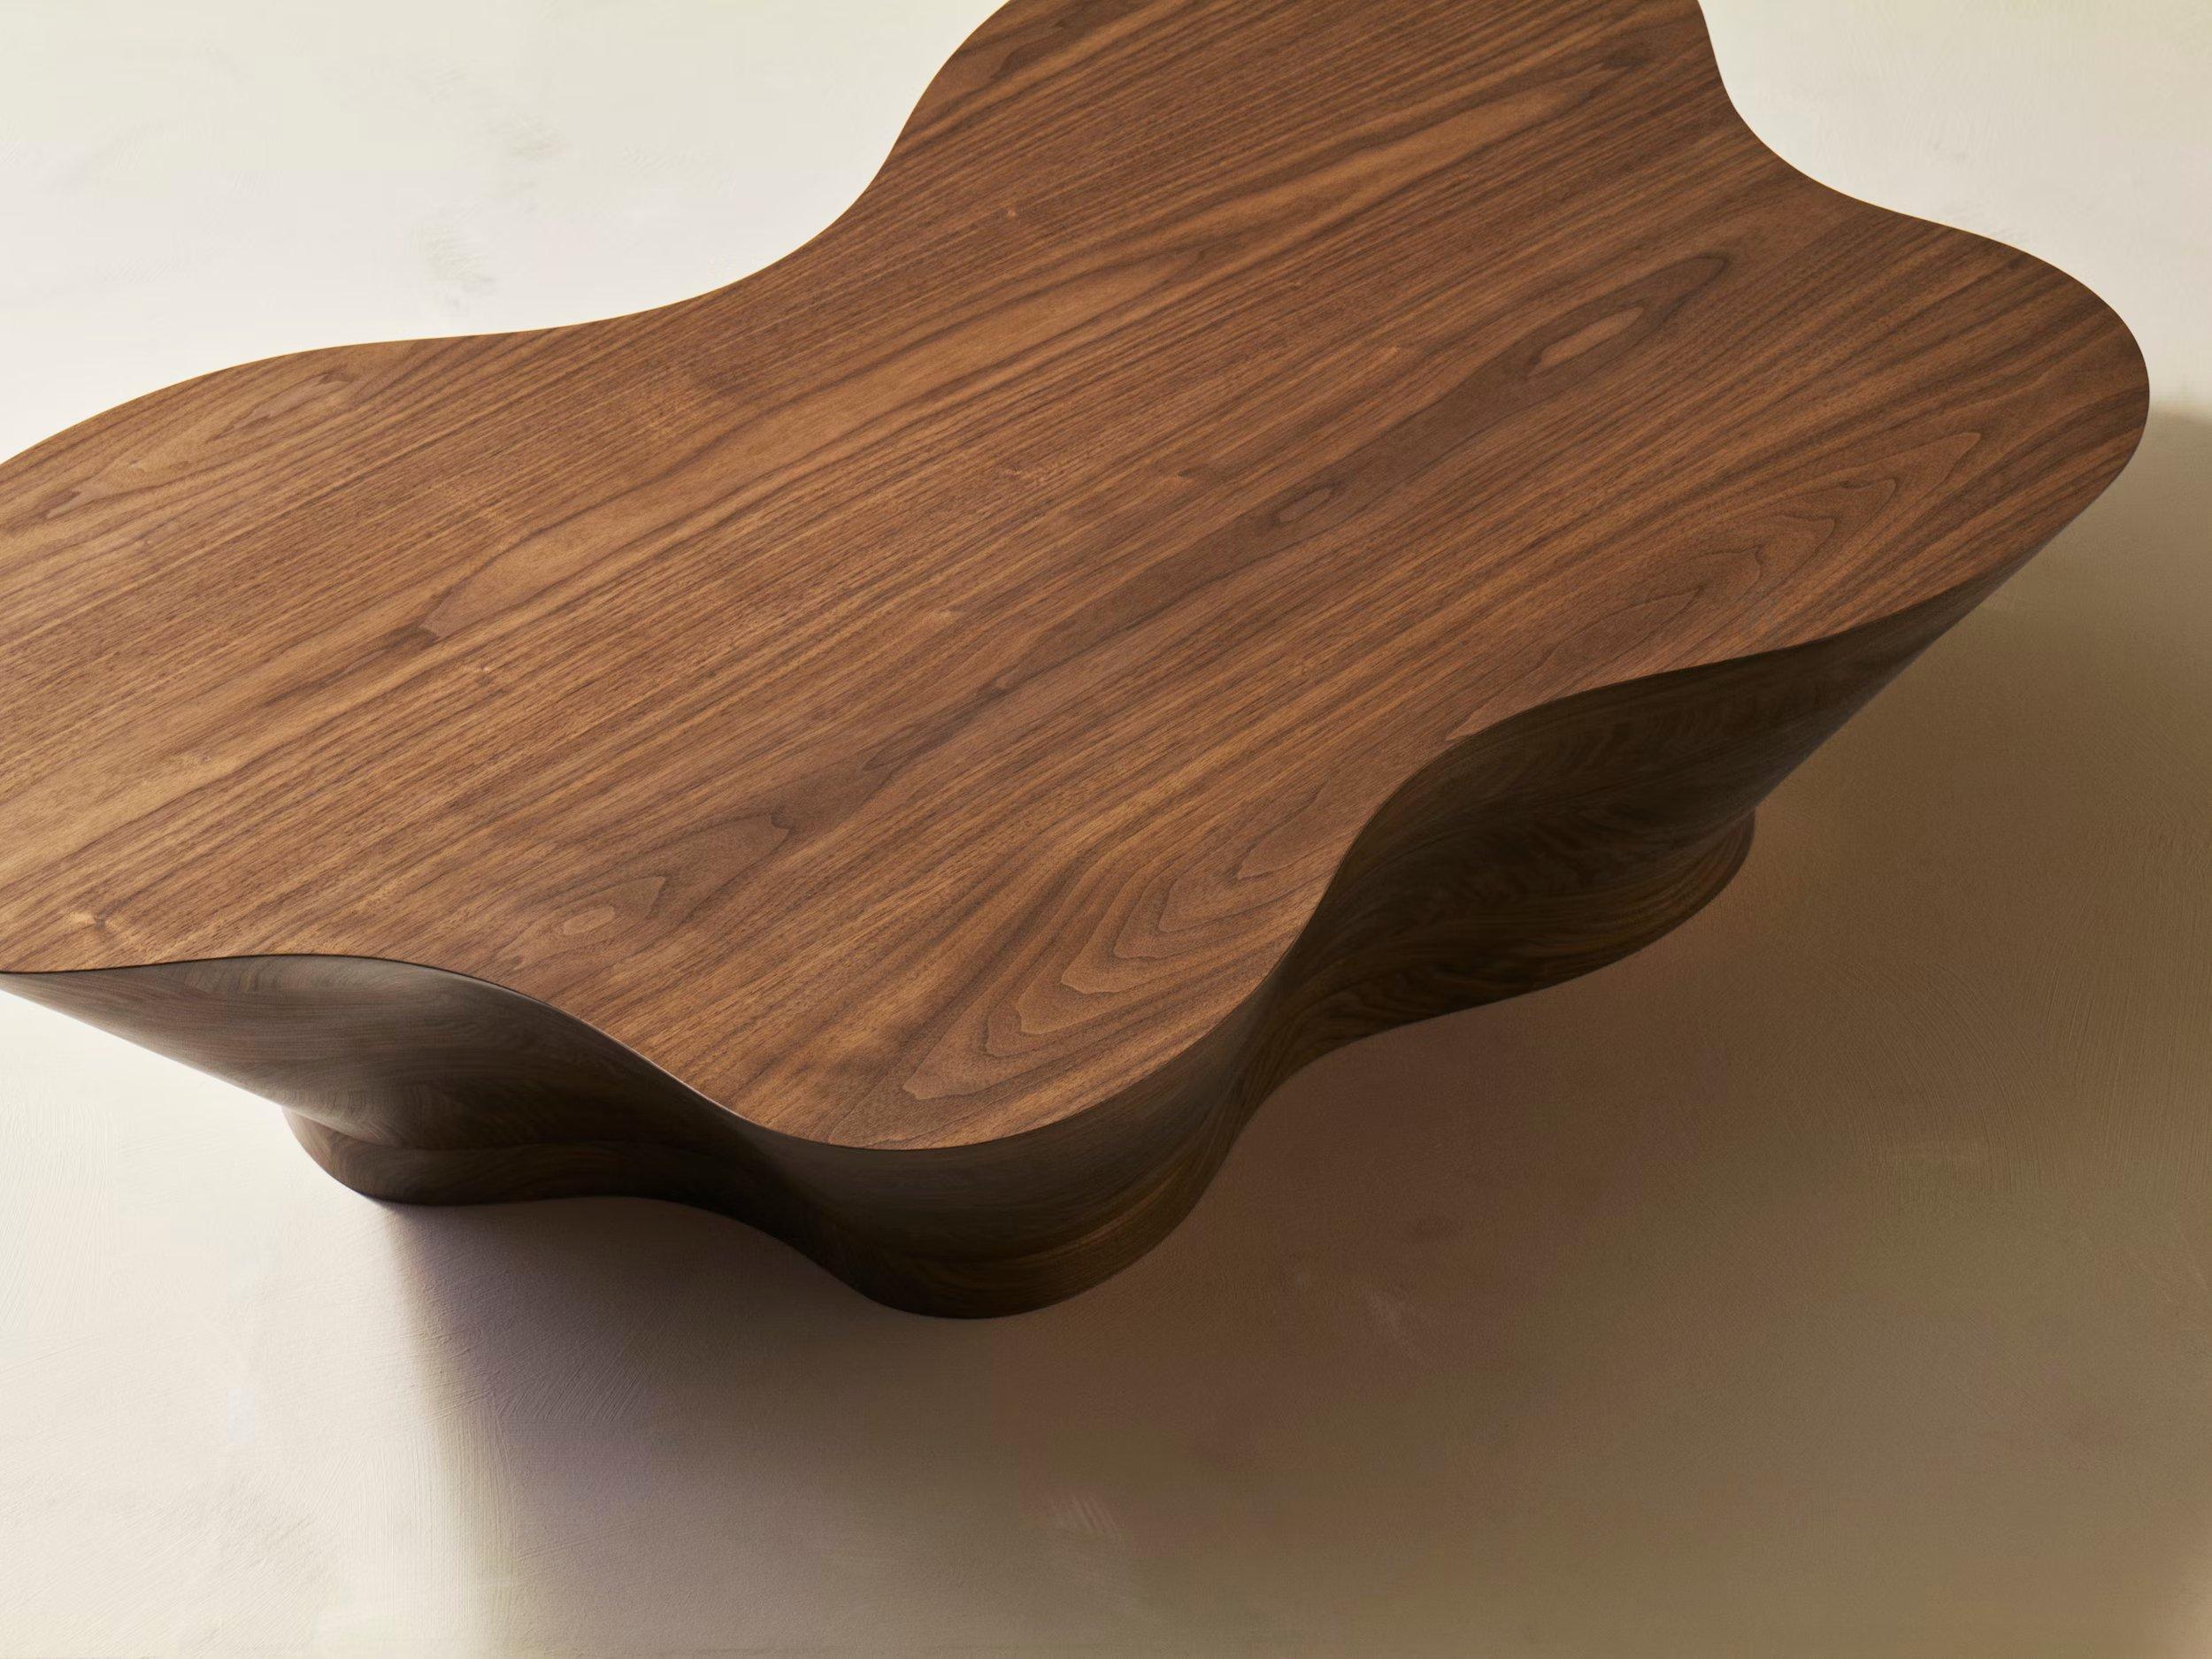 Table basse à la forme suprêmement organique, la SSU (Sunny Side Up) est fabriquée à la main à partir de bois de première qualité. Le résultat est un bel exemple de luxe modeste, la robustesse du bois complétant les lignes élégantes de la table, qui